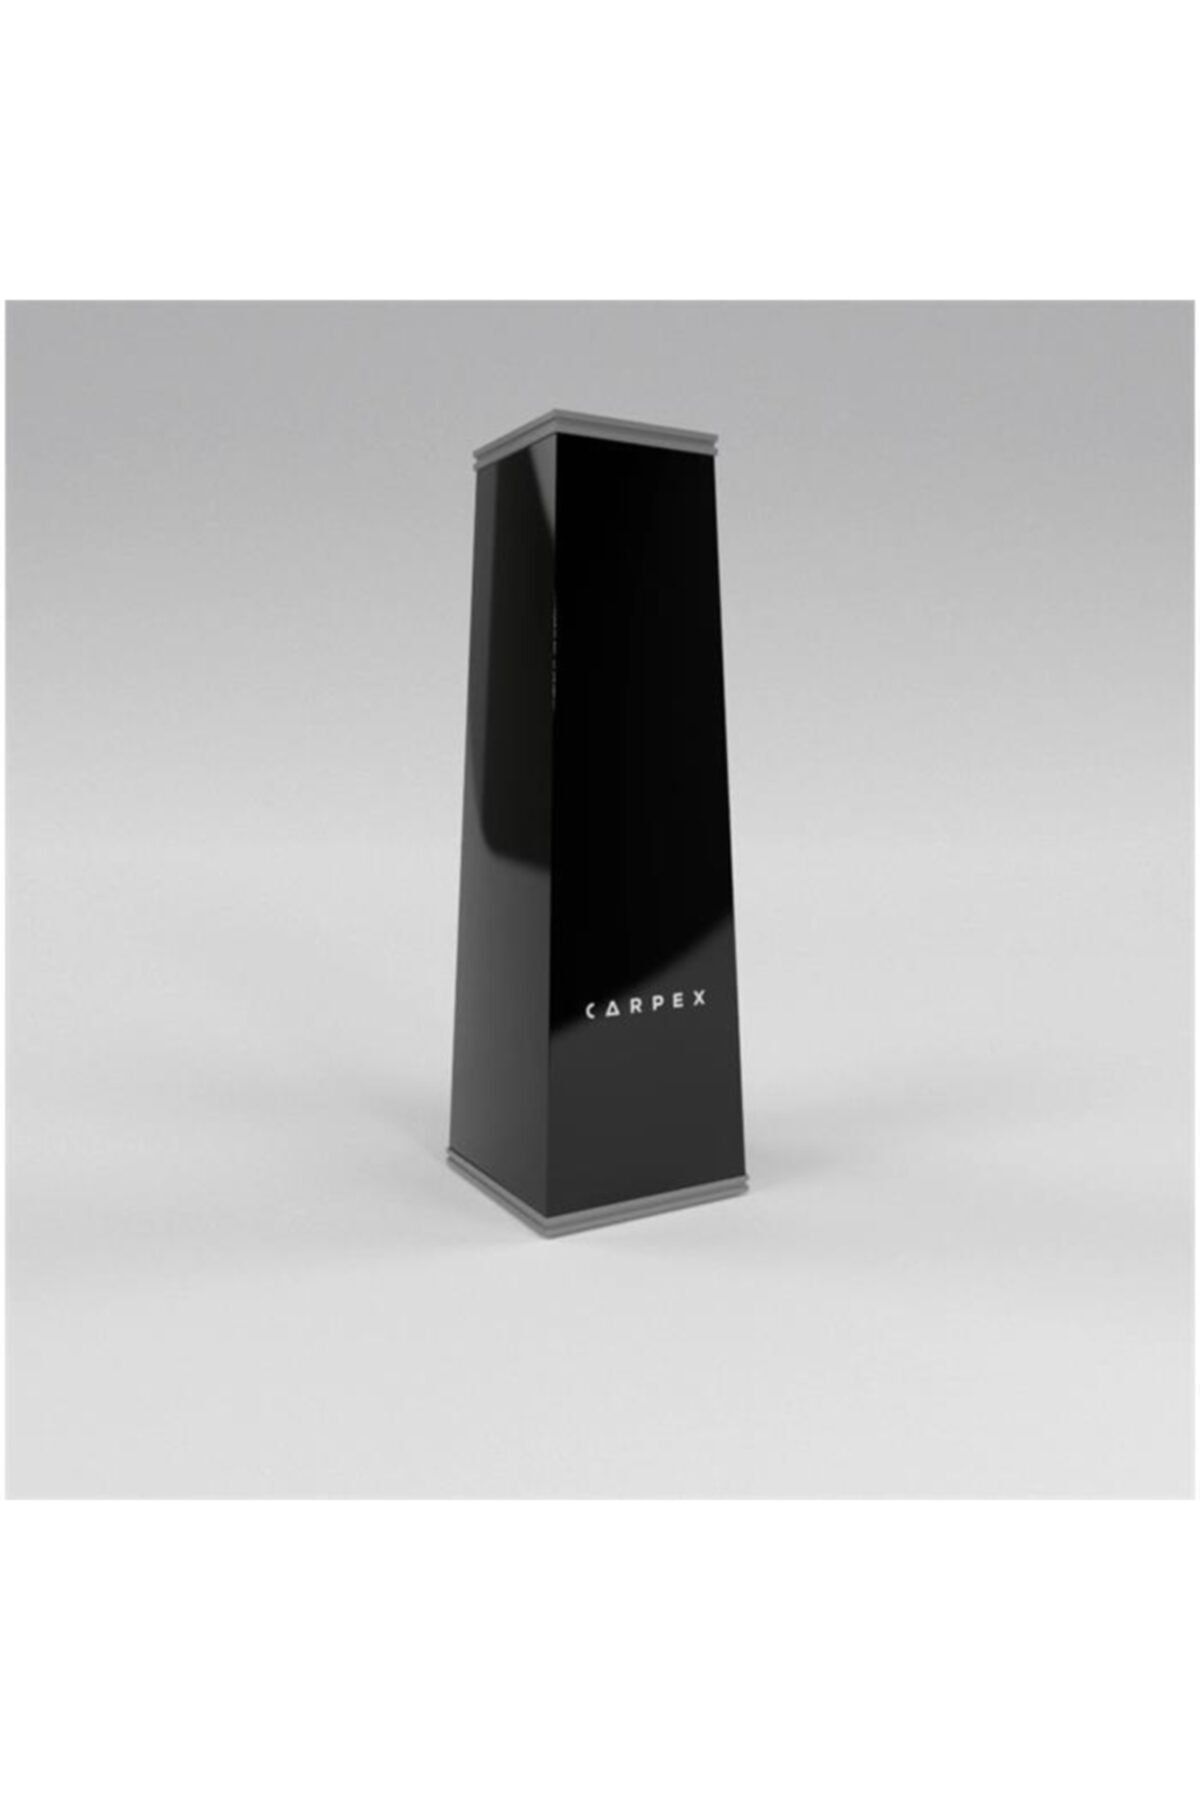 Carpex Auramax Pro 1200l Aroma Difüzörü Siyah